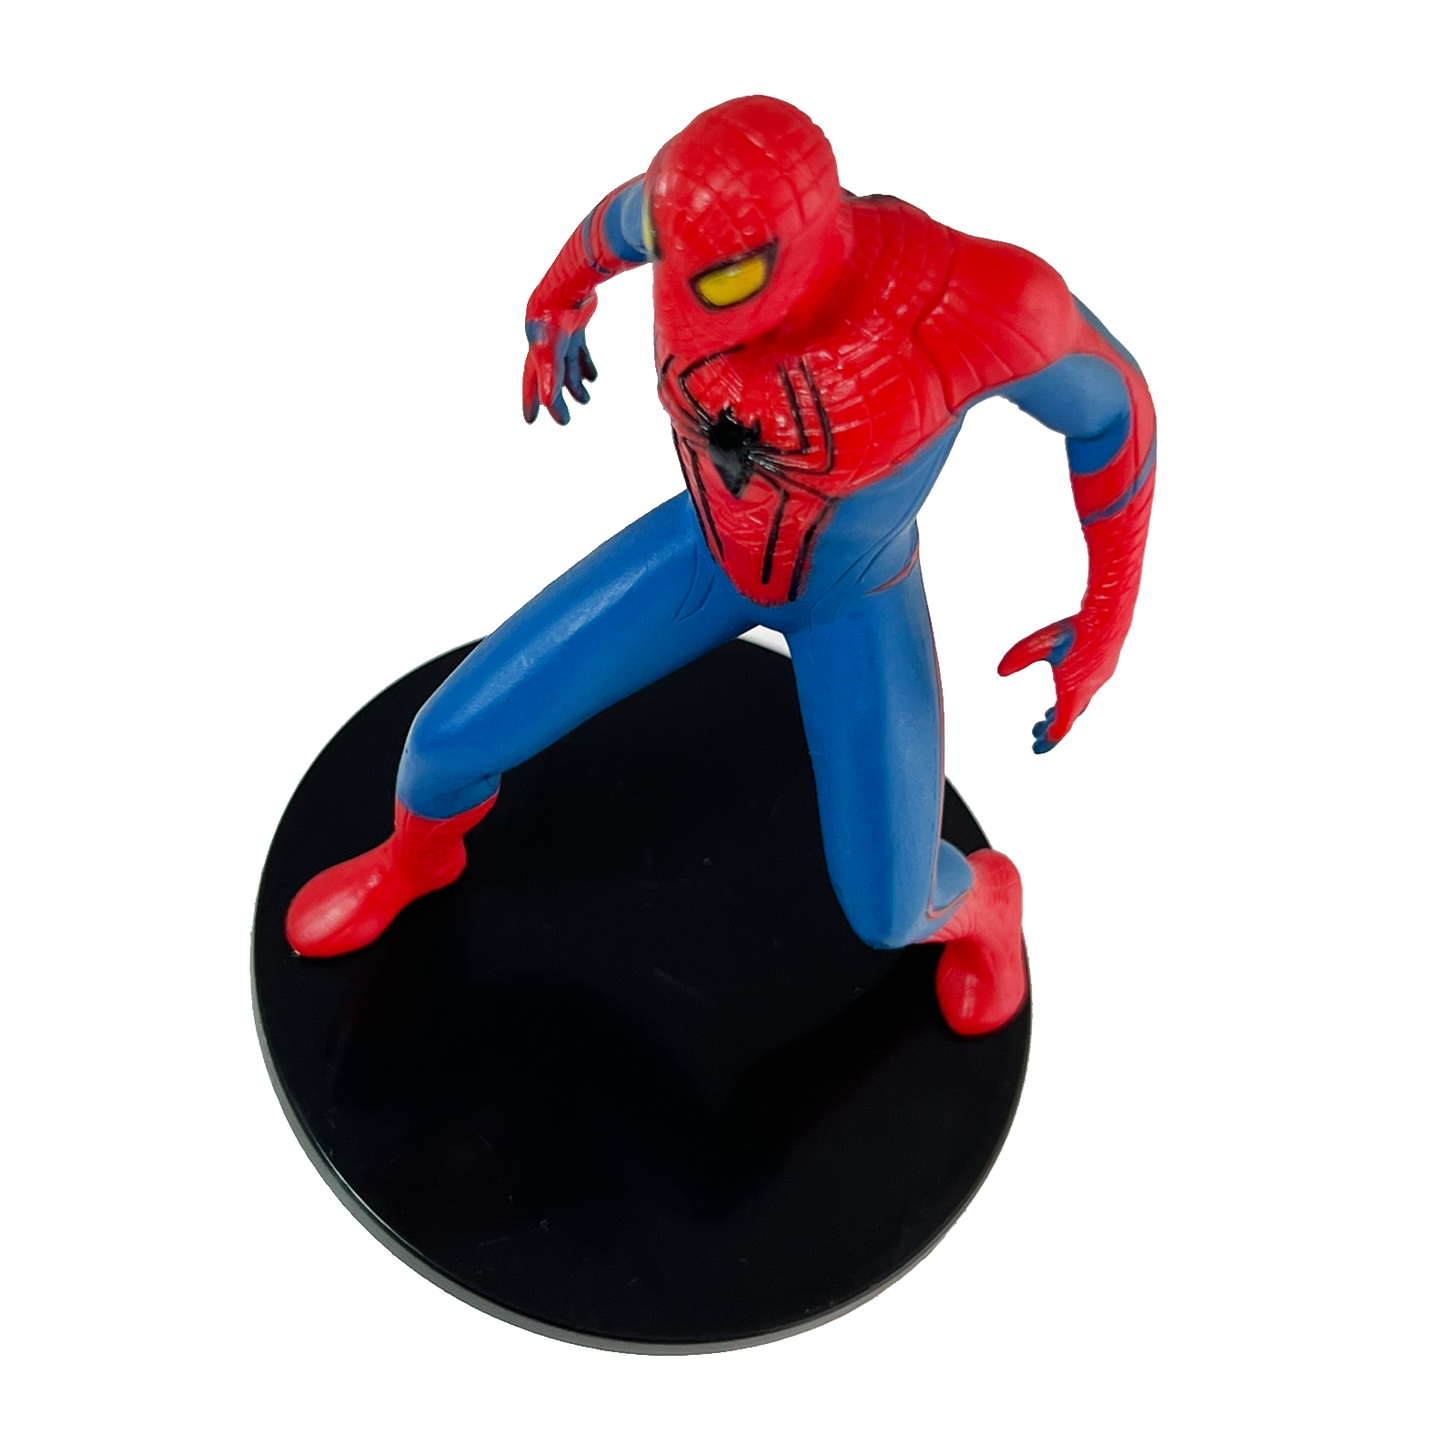 Spiderman figure 4" Tall Plastic loose item